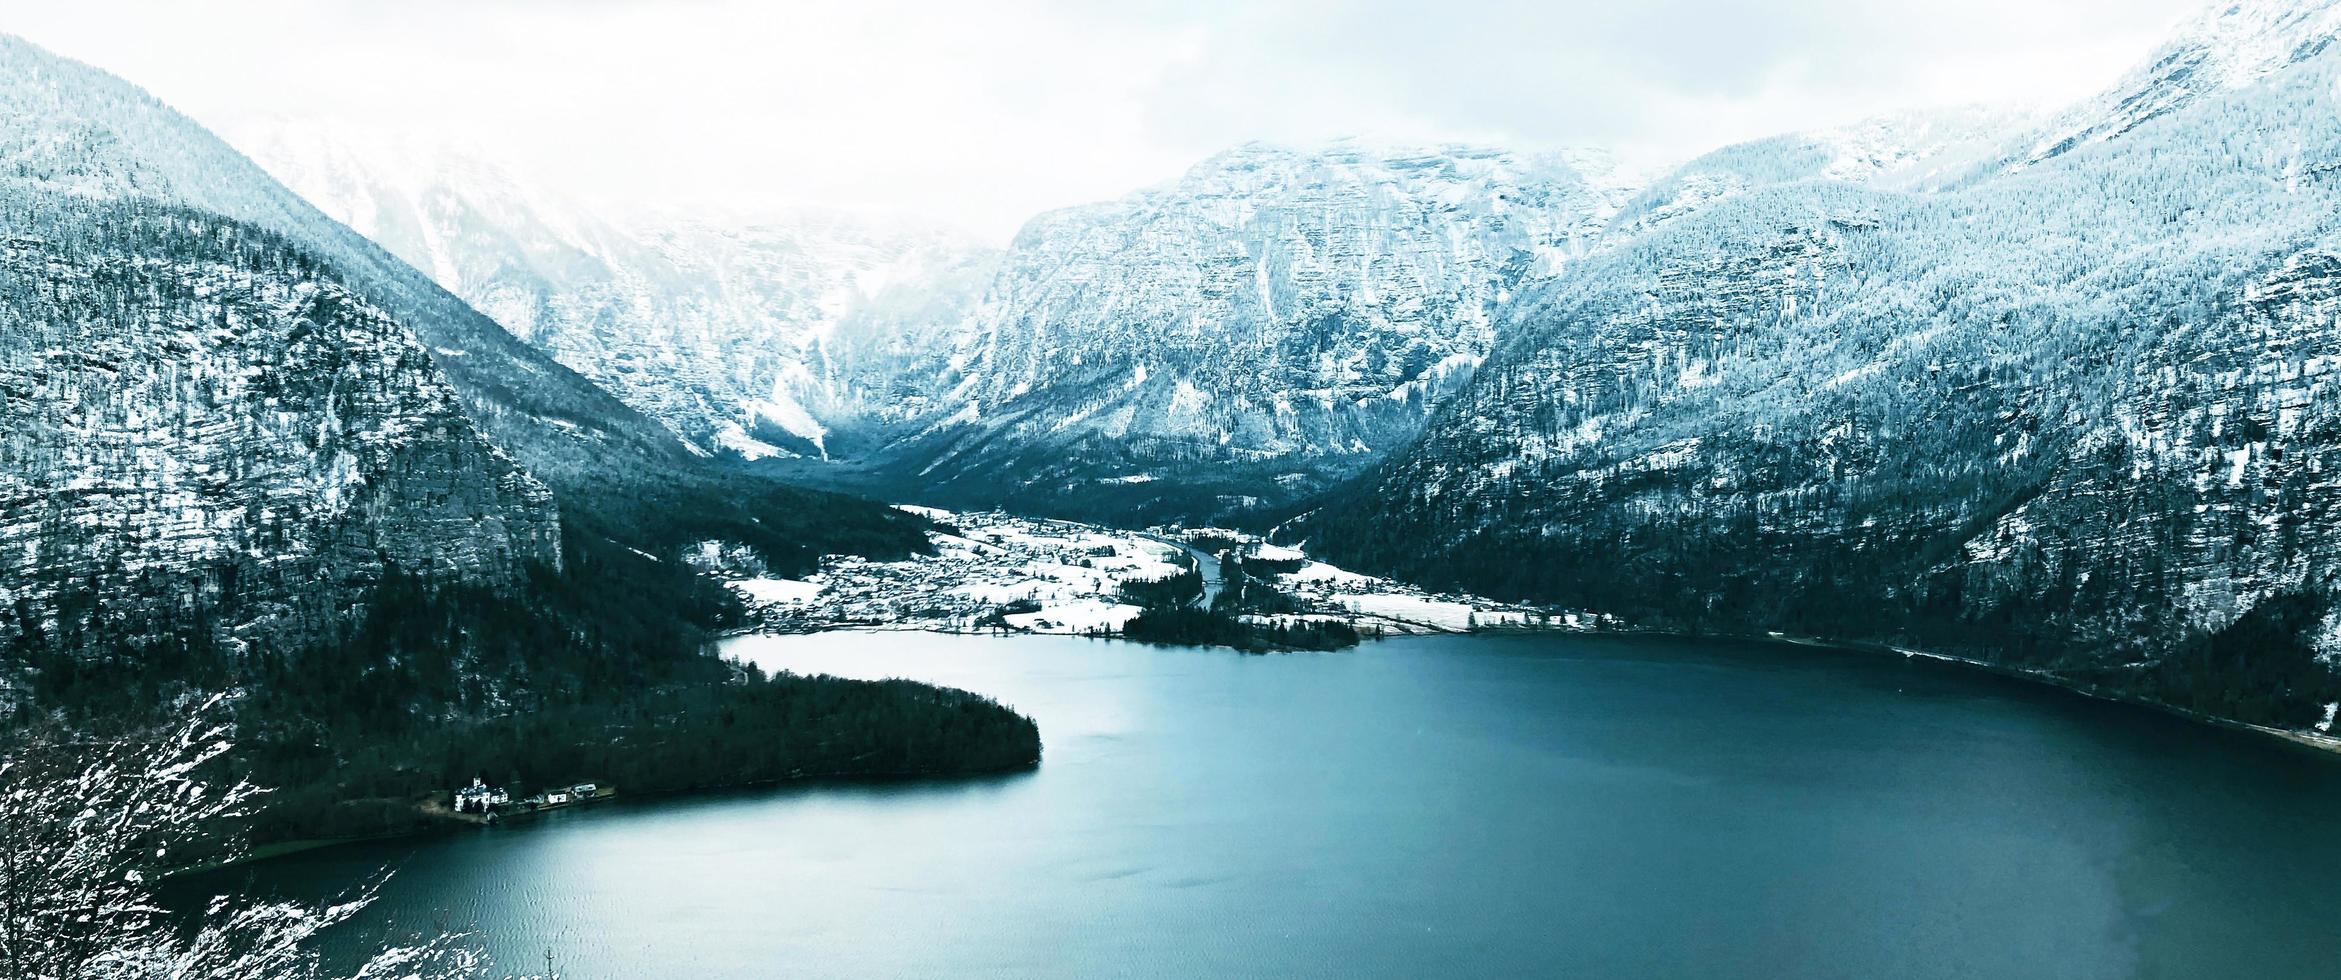 panorama de la vallée du paysage de montagne de neige d'hiver hallstatt et du lac à travers la forêt dans la vallée des hautes terres hallstatt, autriche photo